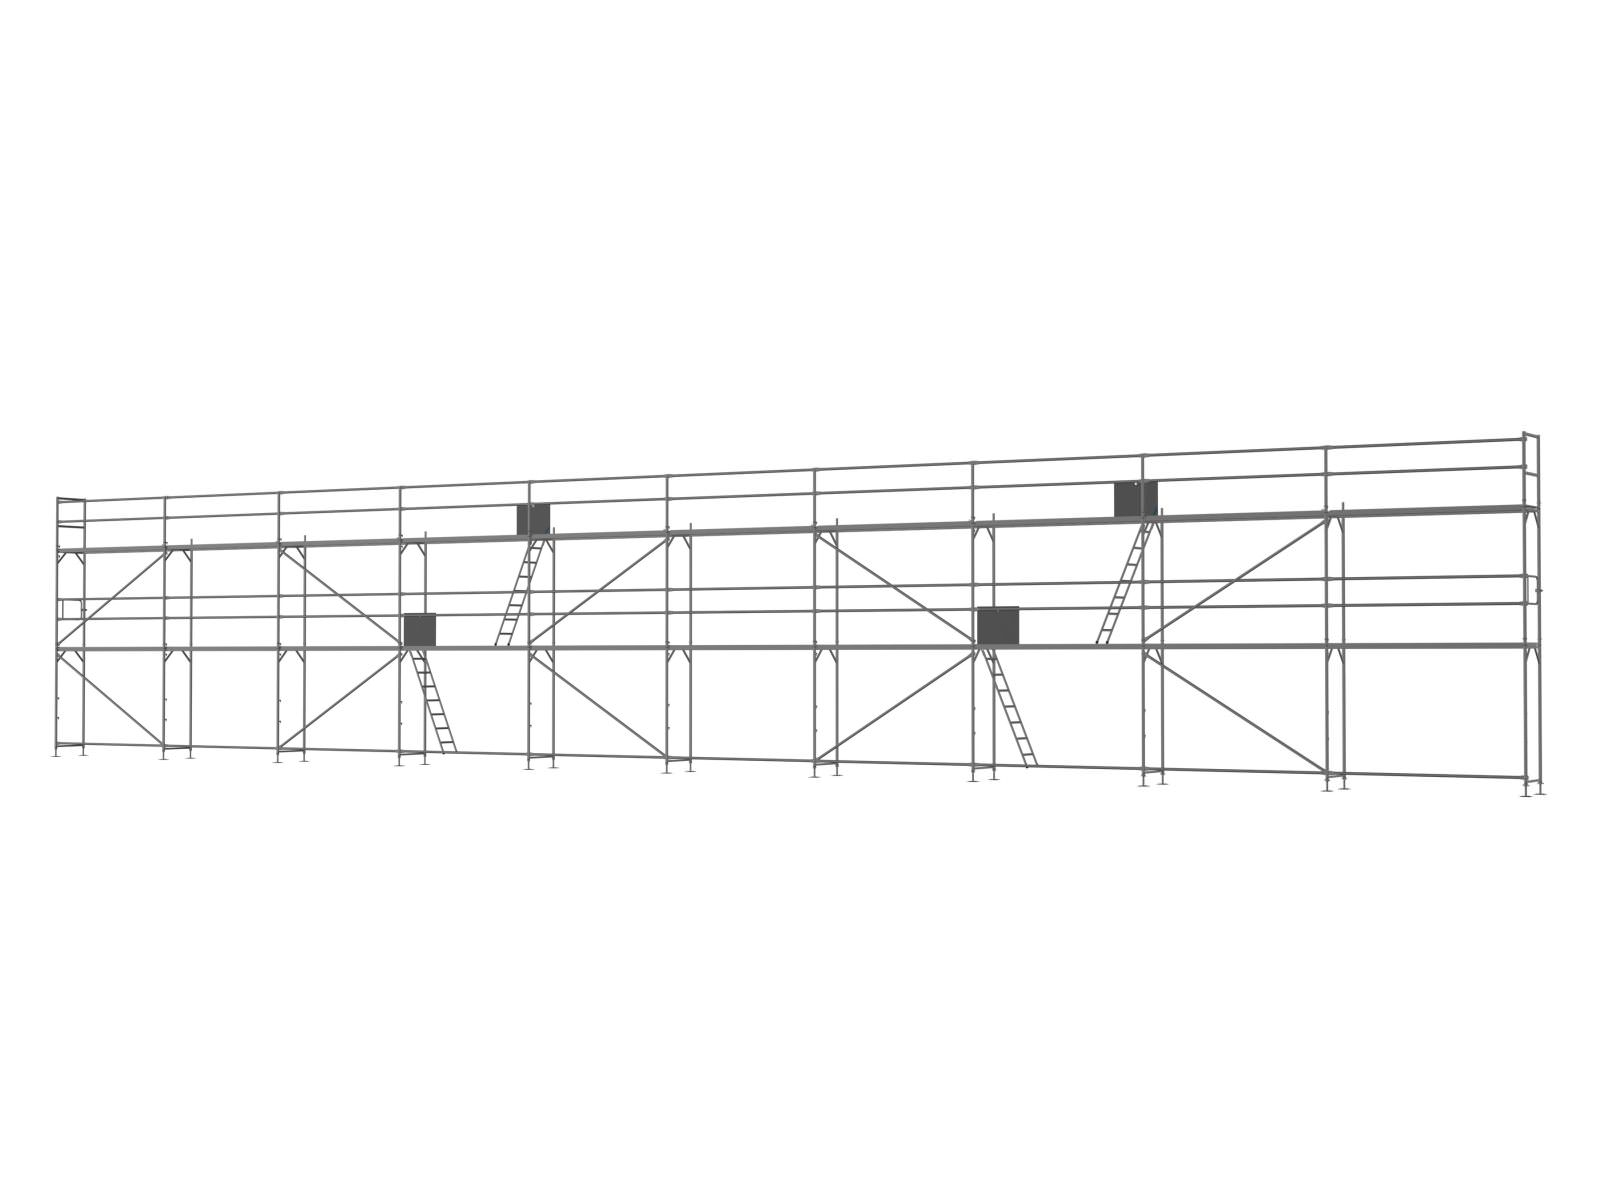 Alu Traufseitengerüst 180 qm - 3,0 m Felder - 30 m lang - 6 m Arbeitshöhe - Basis-Gerüst inkl. Aufstieg & Befestigung